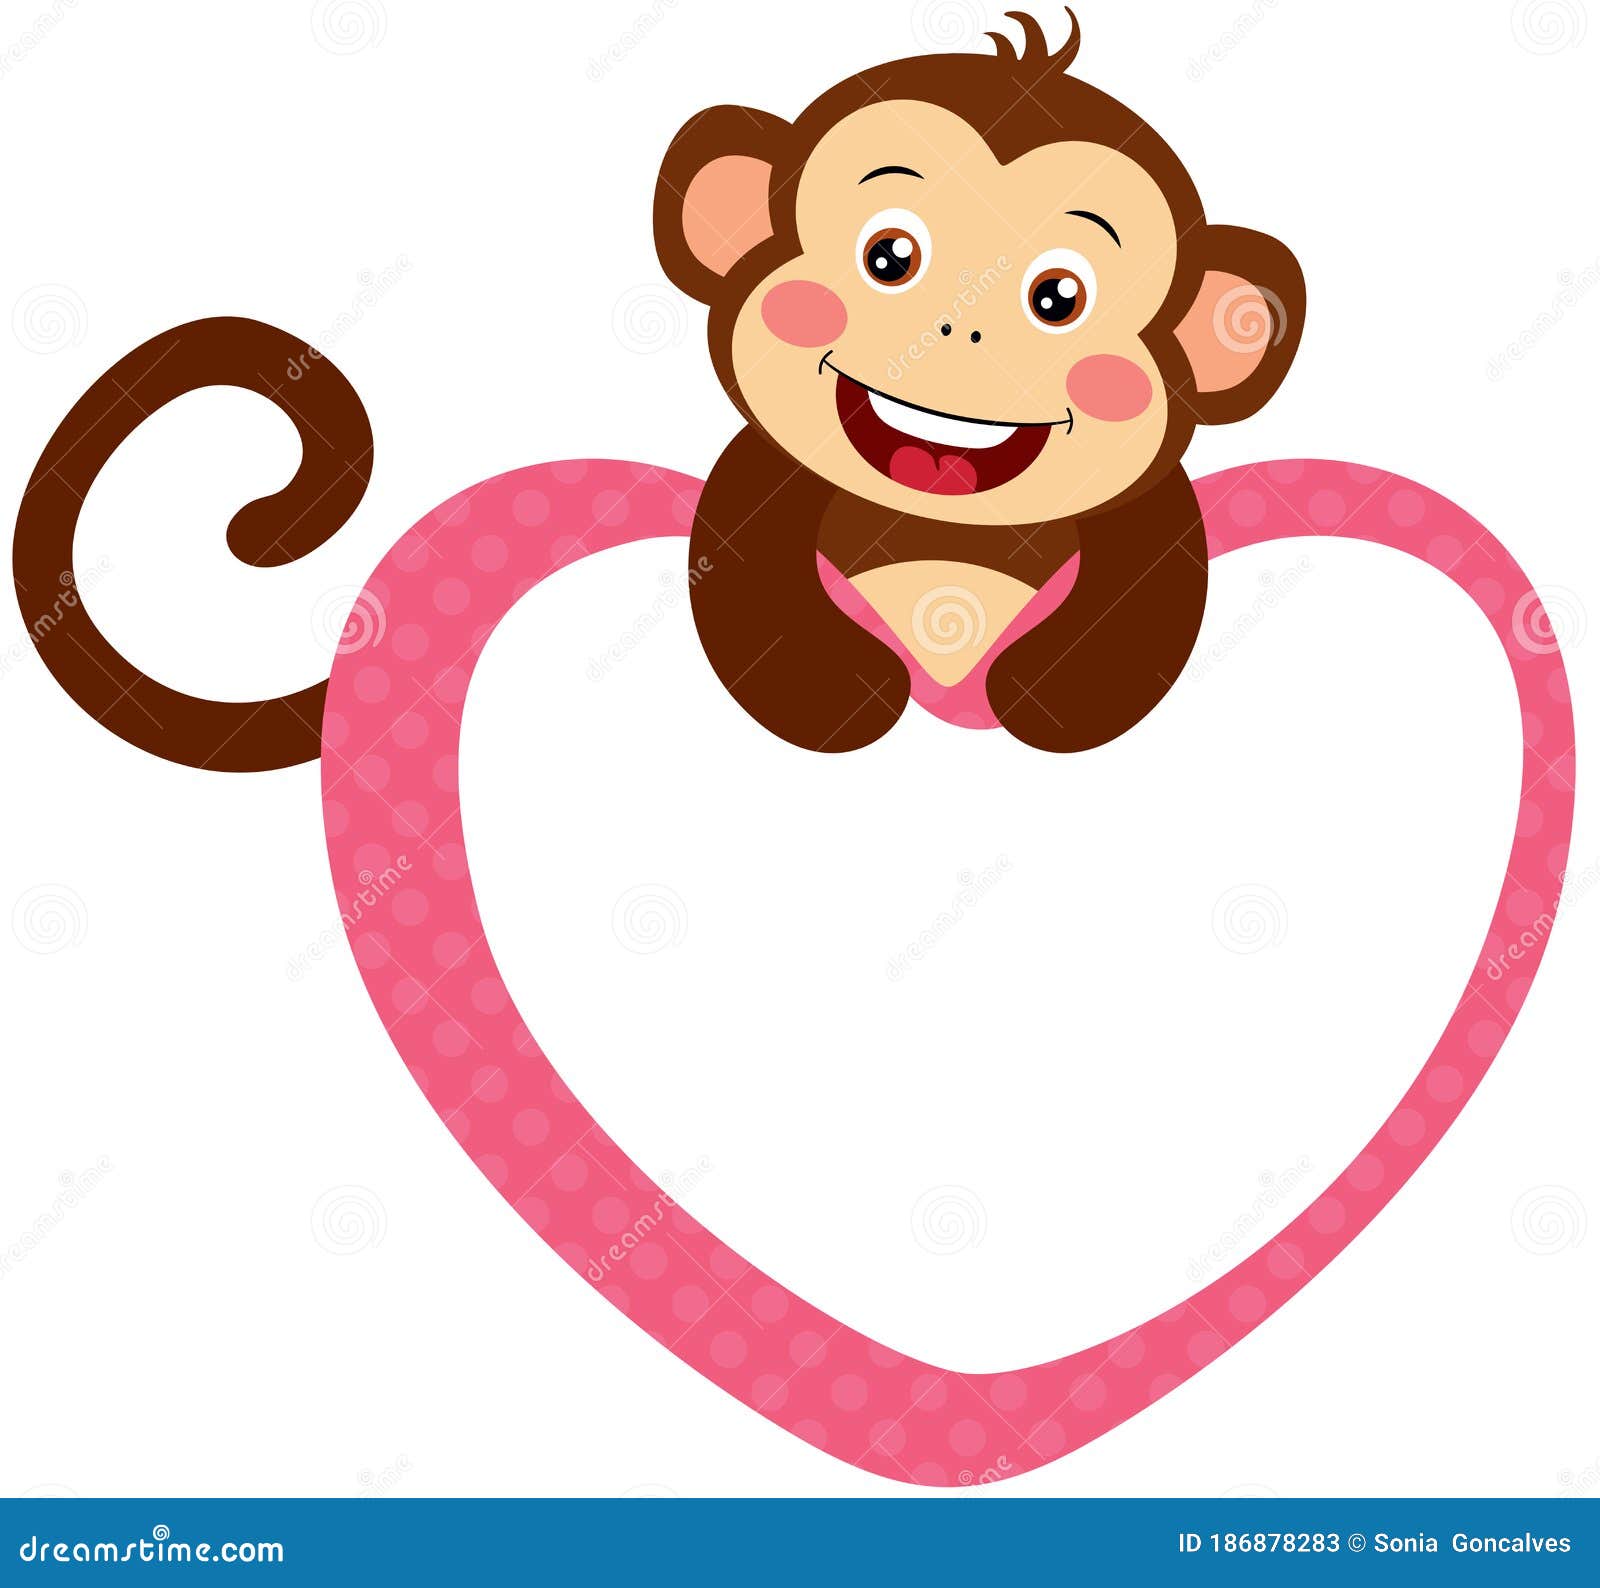 Bạn sẽ cảm thấy mê mẩn với khung trái tim đáng yêu bao quanh con khỉ nhìn lén này!